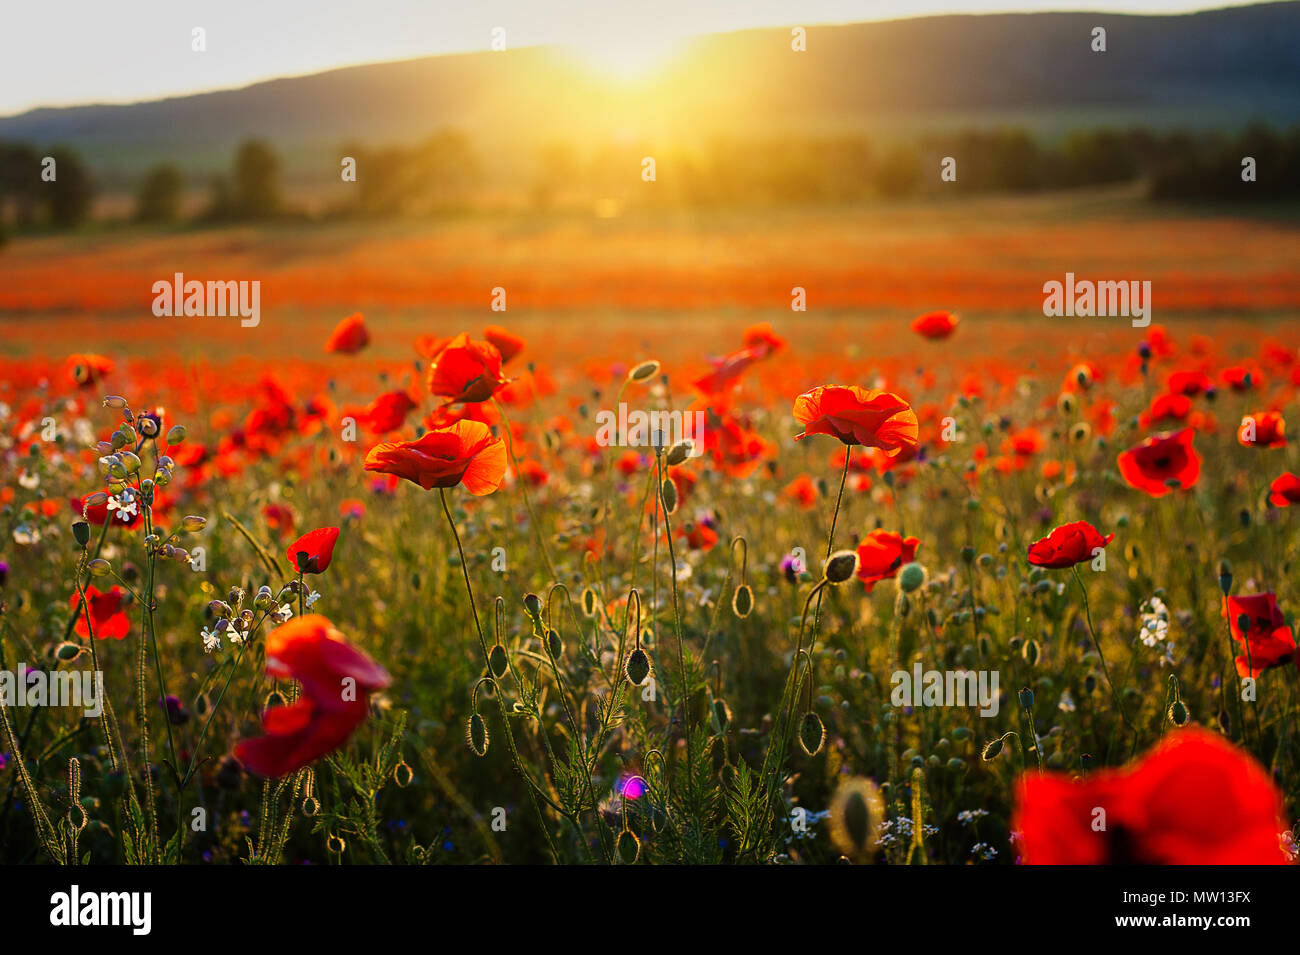 Hermosa imagen de campos de adormidera en Italia atardecer de verano. Foto de stock